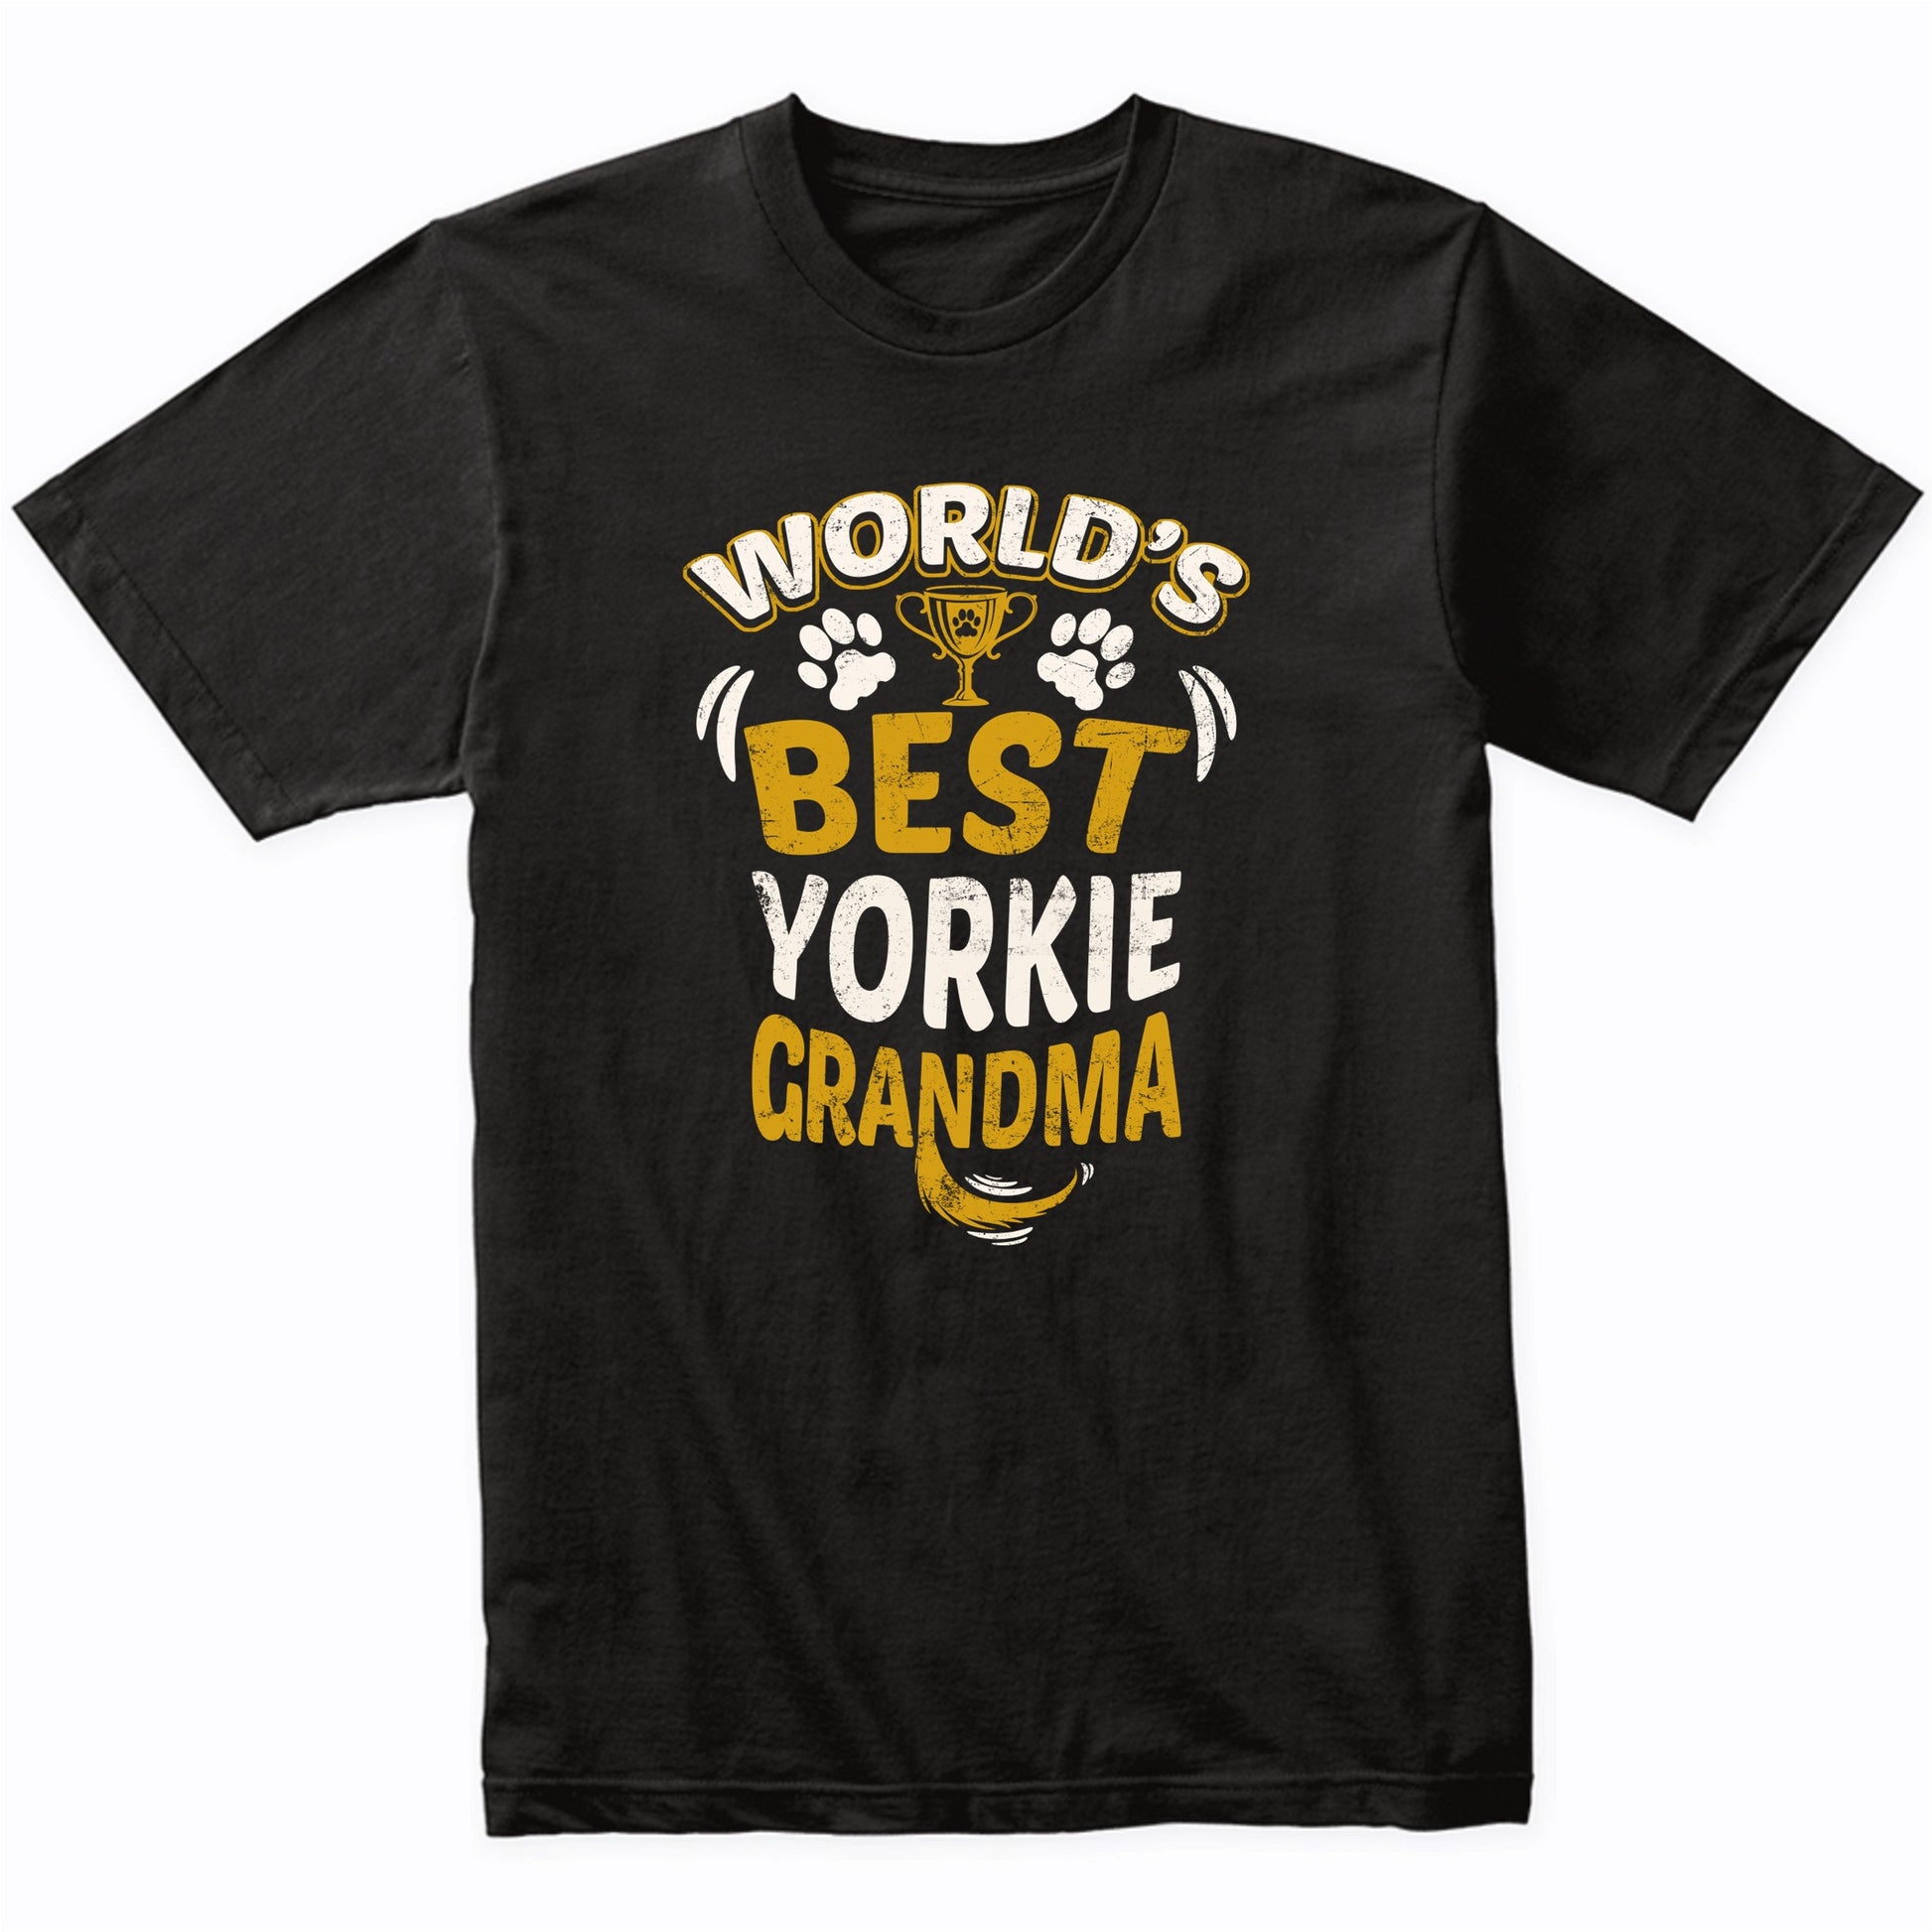 World's Best Yorkie Grandma Graphic T-Shirt